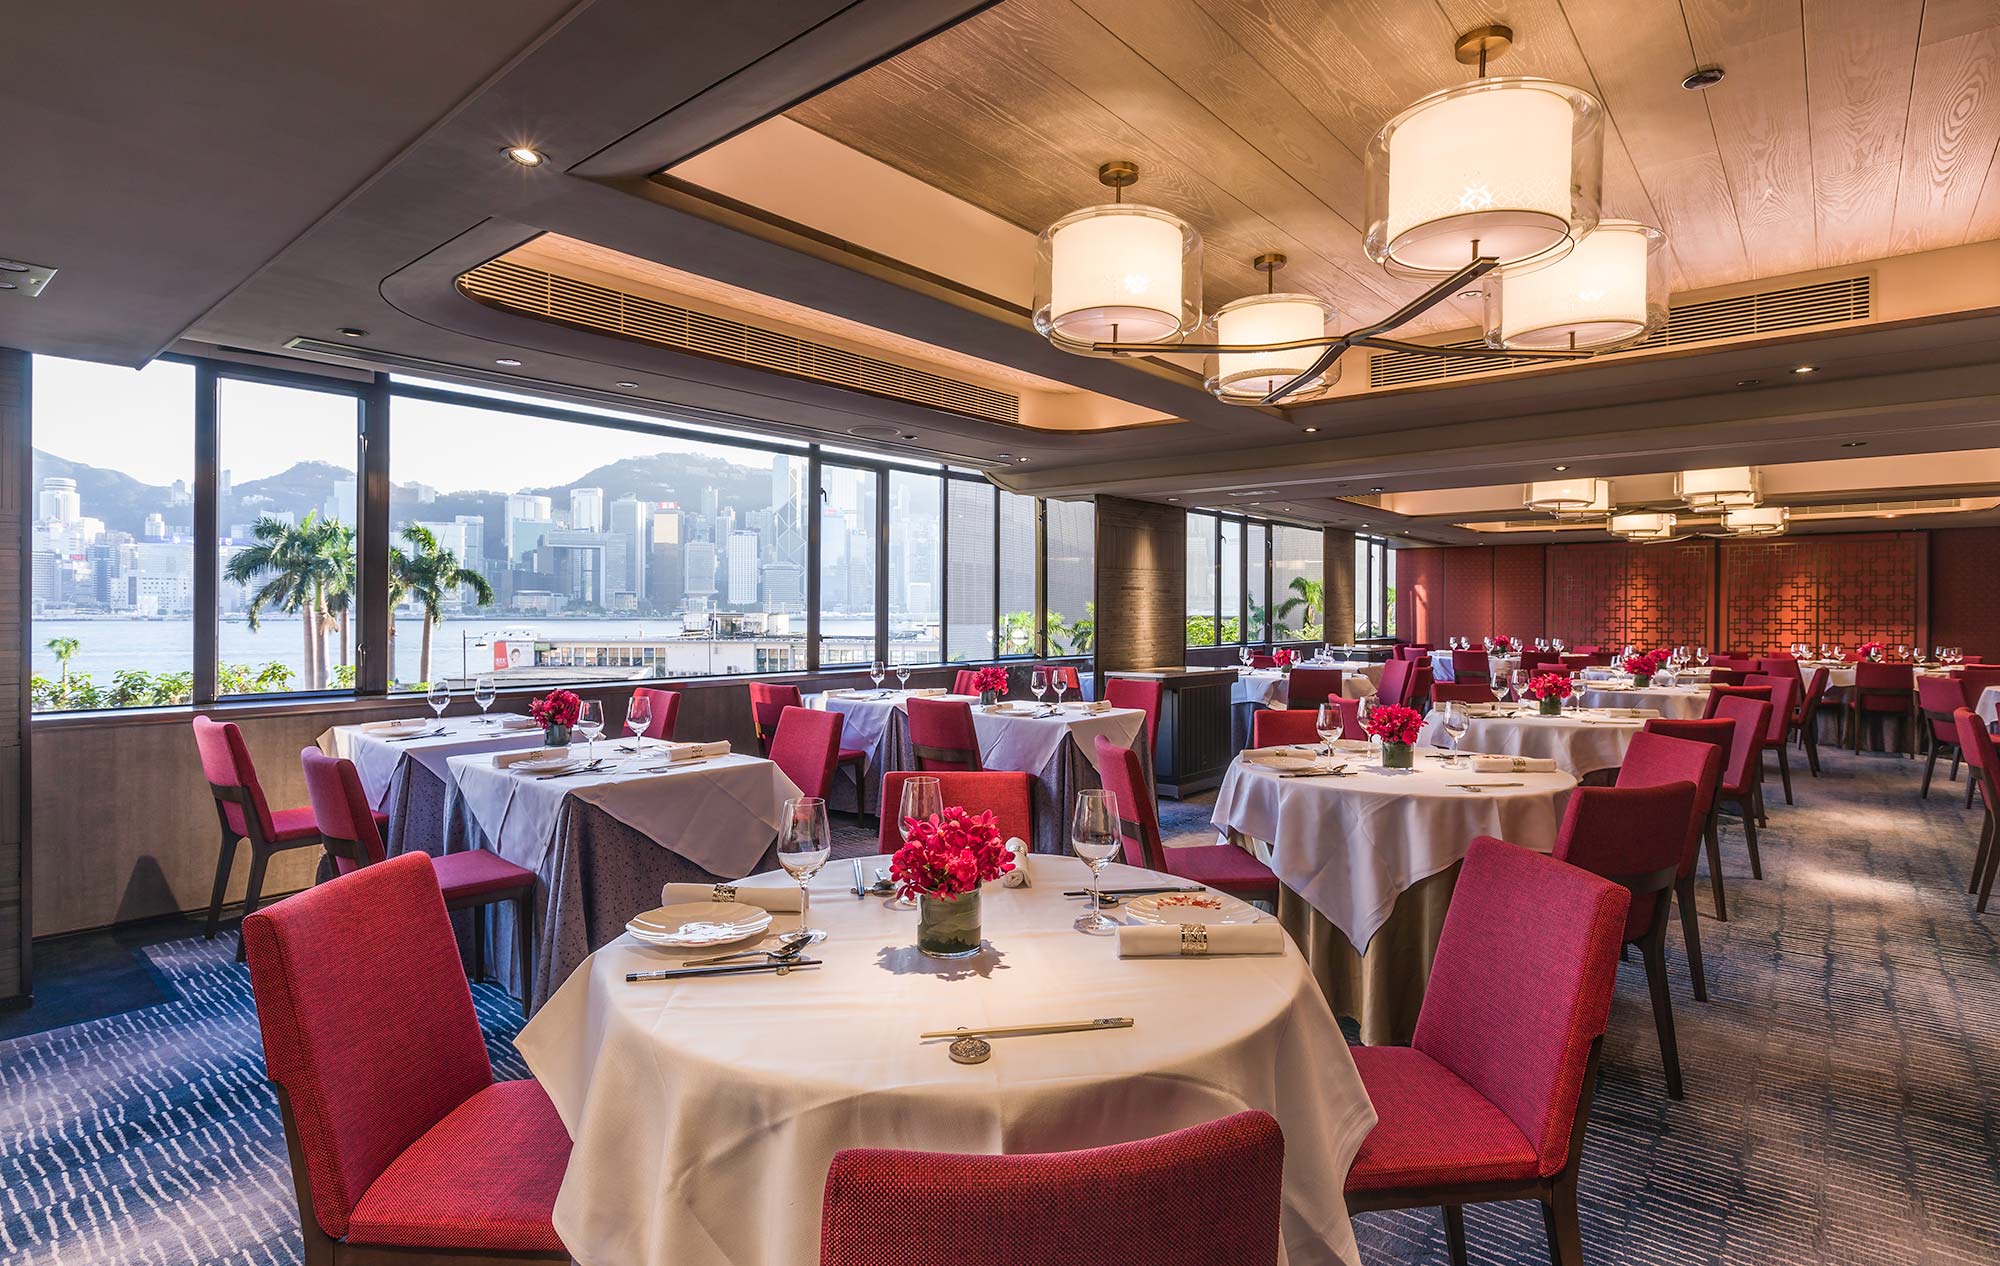 Peking Garden dining hall overlooking Victoria Harbour in Hong Kong